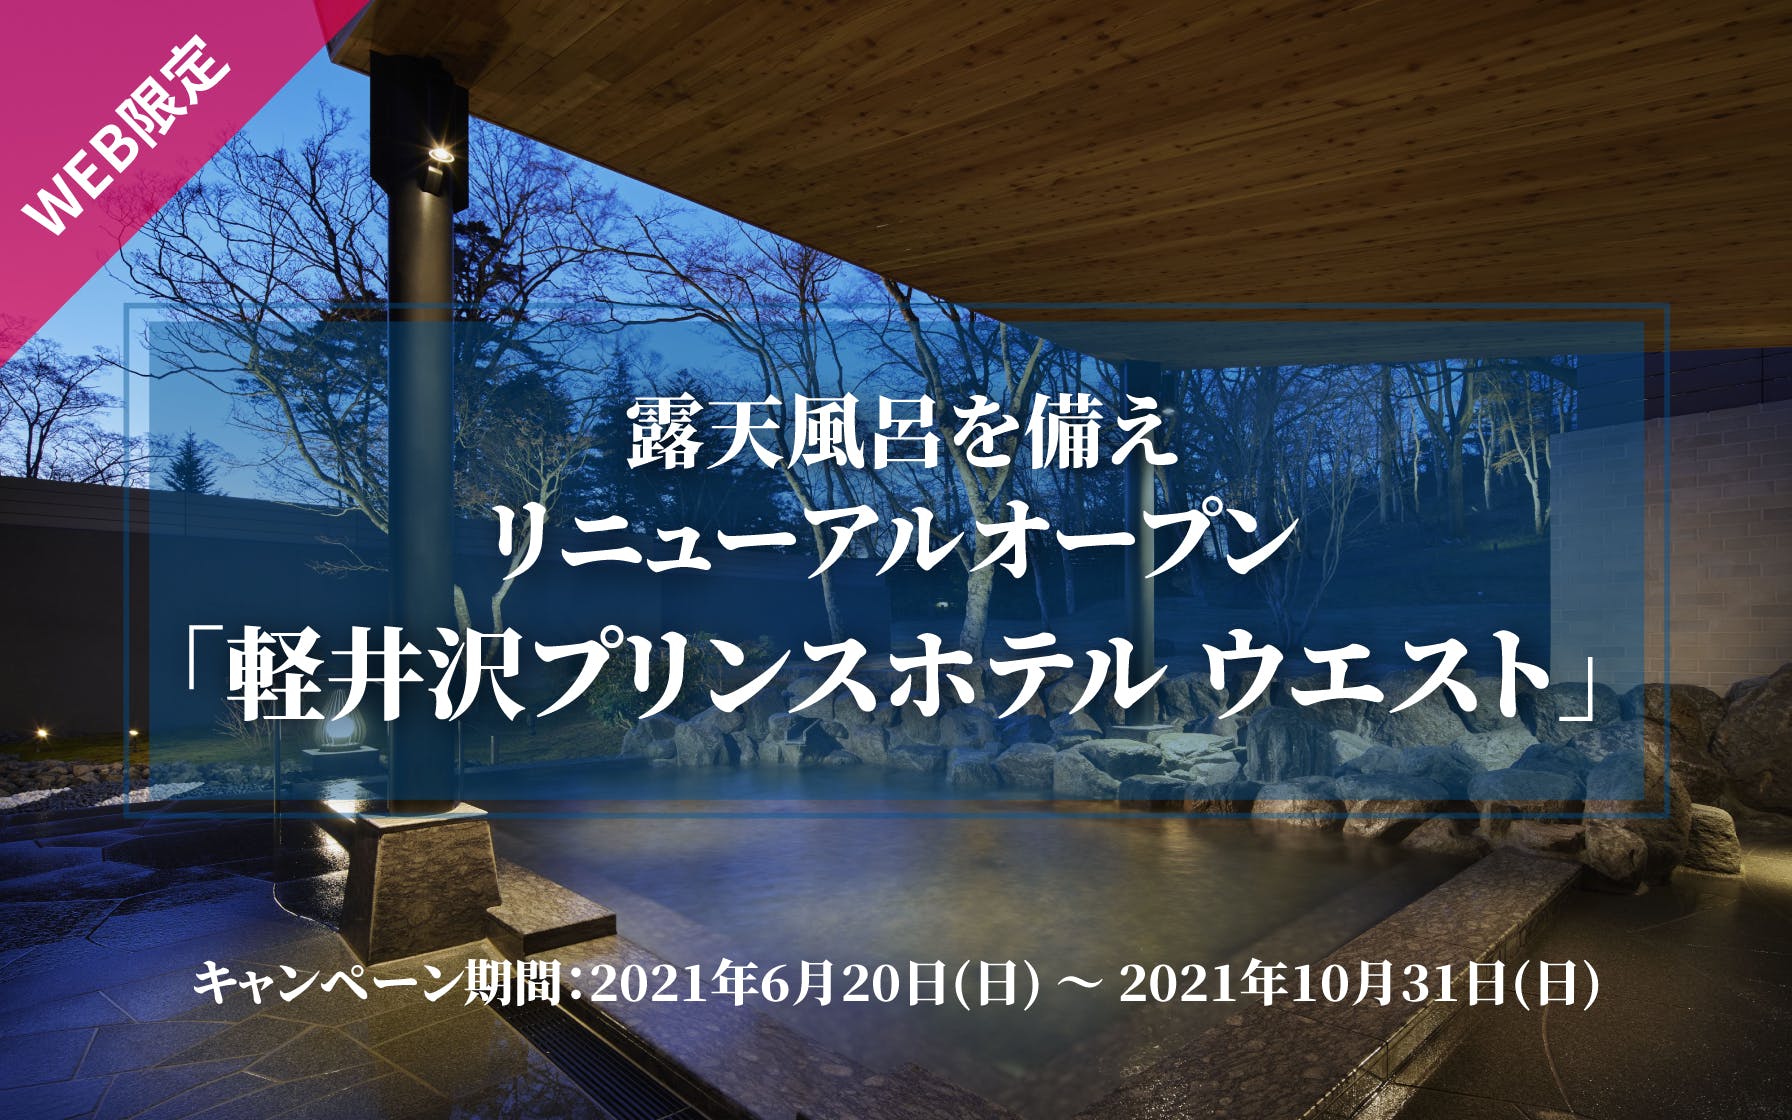 露天風呂を備えリニューアルオープン「軽井沢プリンスホテル ウエスト」